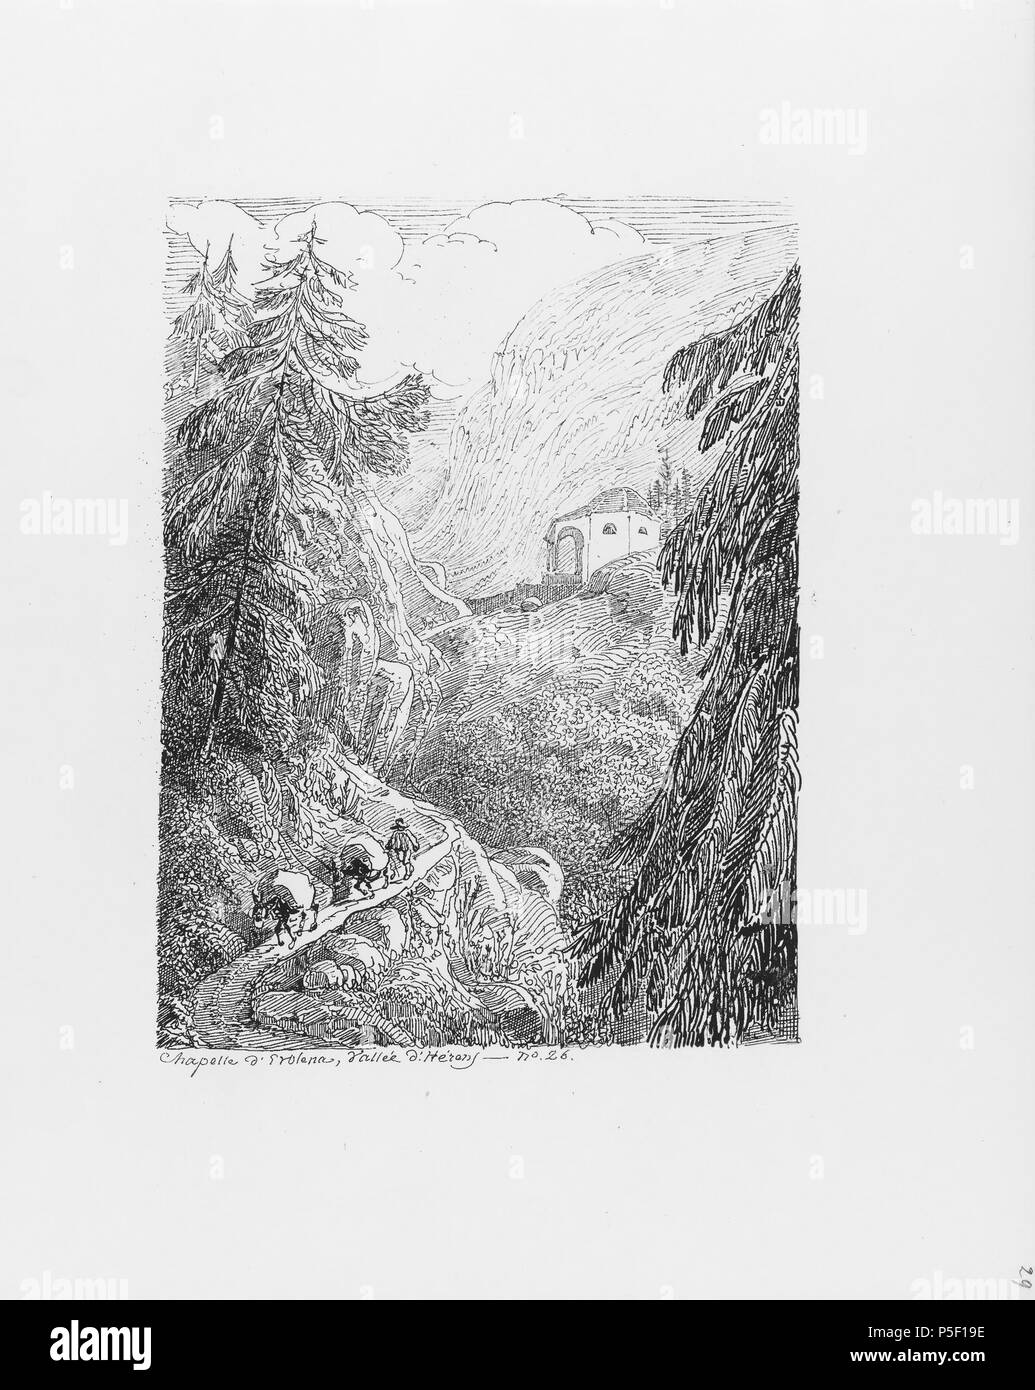 322 CH-NB-Voyage autour du Mont-Blanc dans les vallées d'Hérens de Zermatt et au Grimsel 1843-nbdig-19161-028 Stock Photo